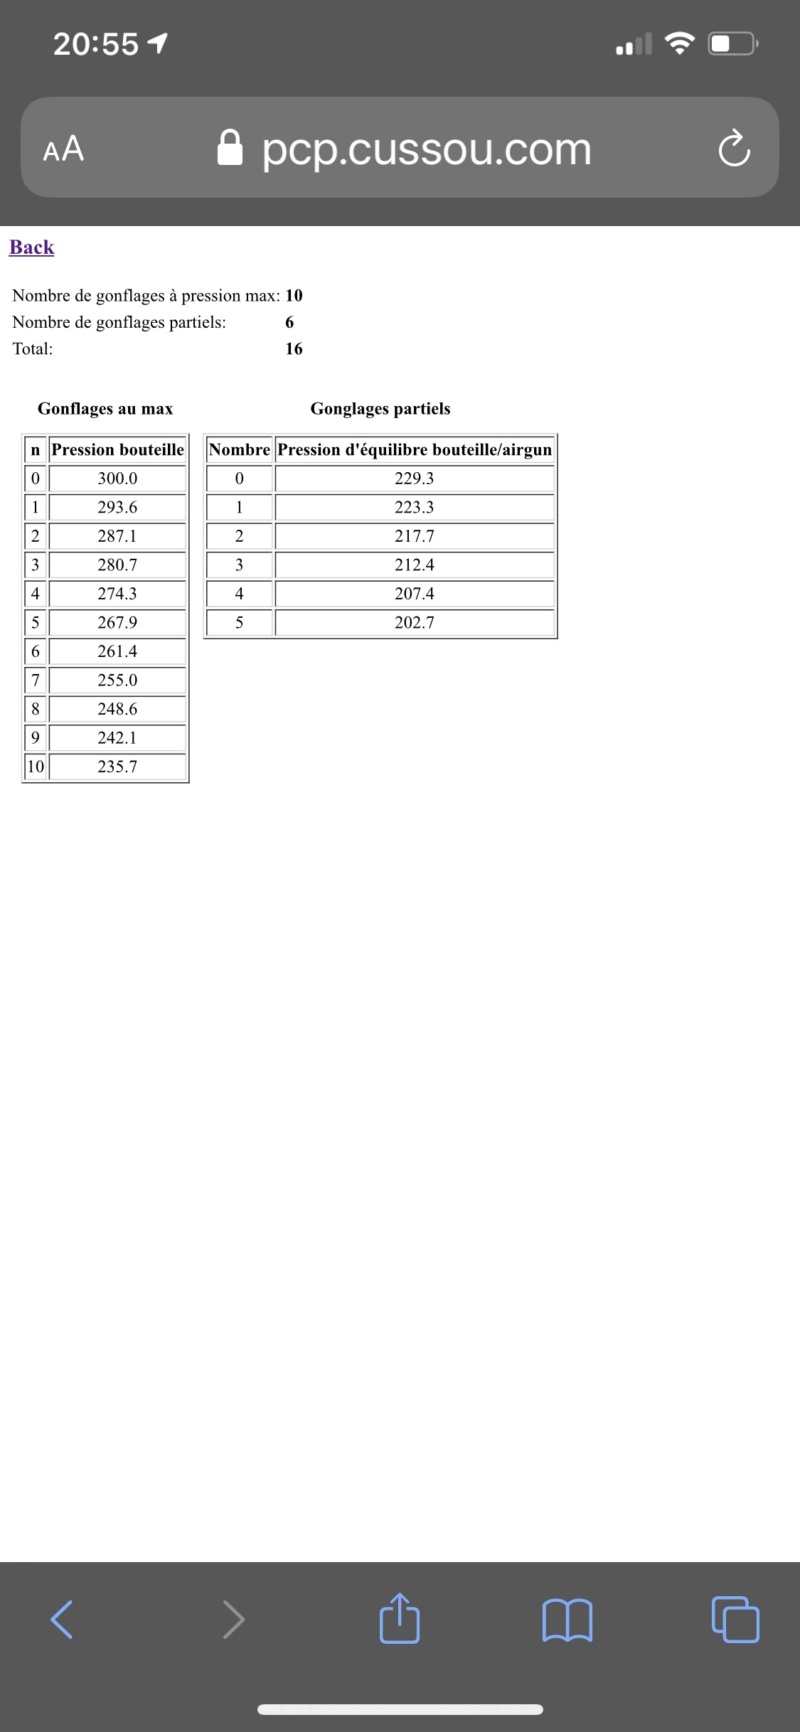 PCP: calculateur du nombre de remplissages/gonflages avec une bouteille - Page 2 Aea45710